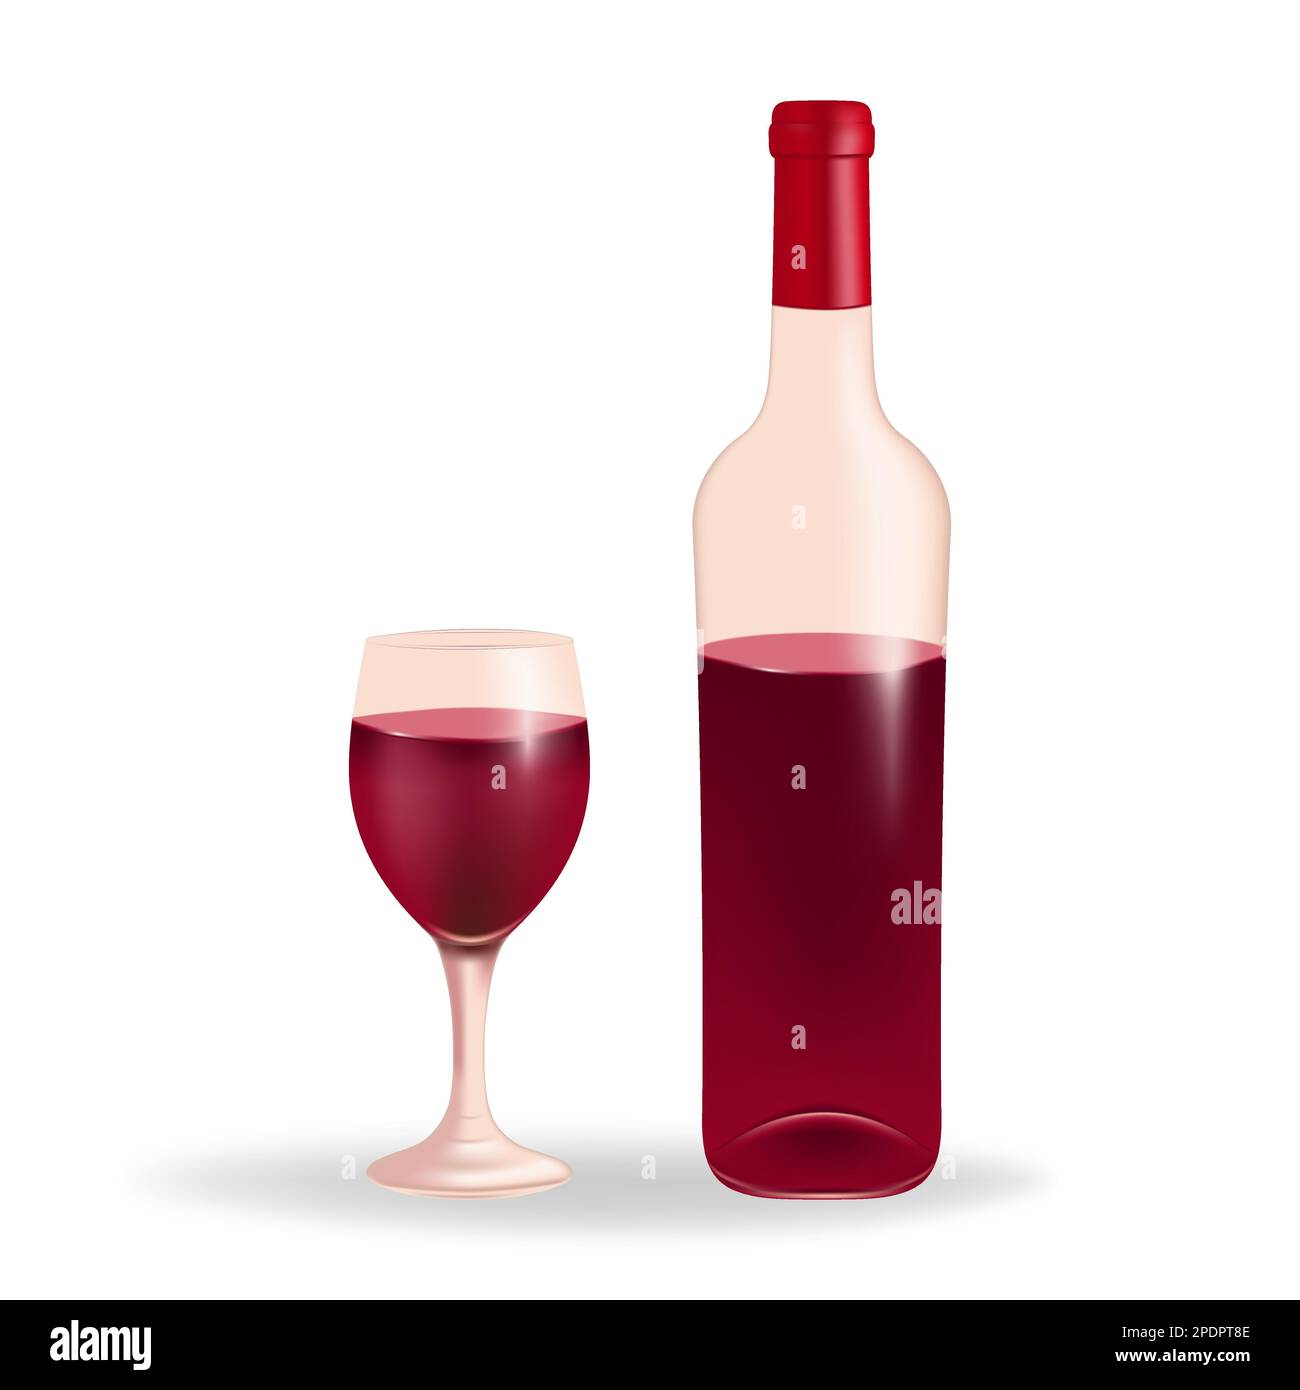 Verre de vin rempli de vin rouge, accompagné d'une bouteille de vin, sur fond blanc. Parfait pour les vins, les menus, ou tout projet lié au vin, bever Illustration de Vecteur